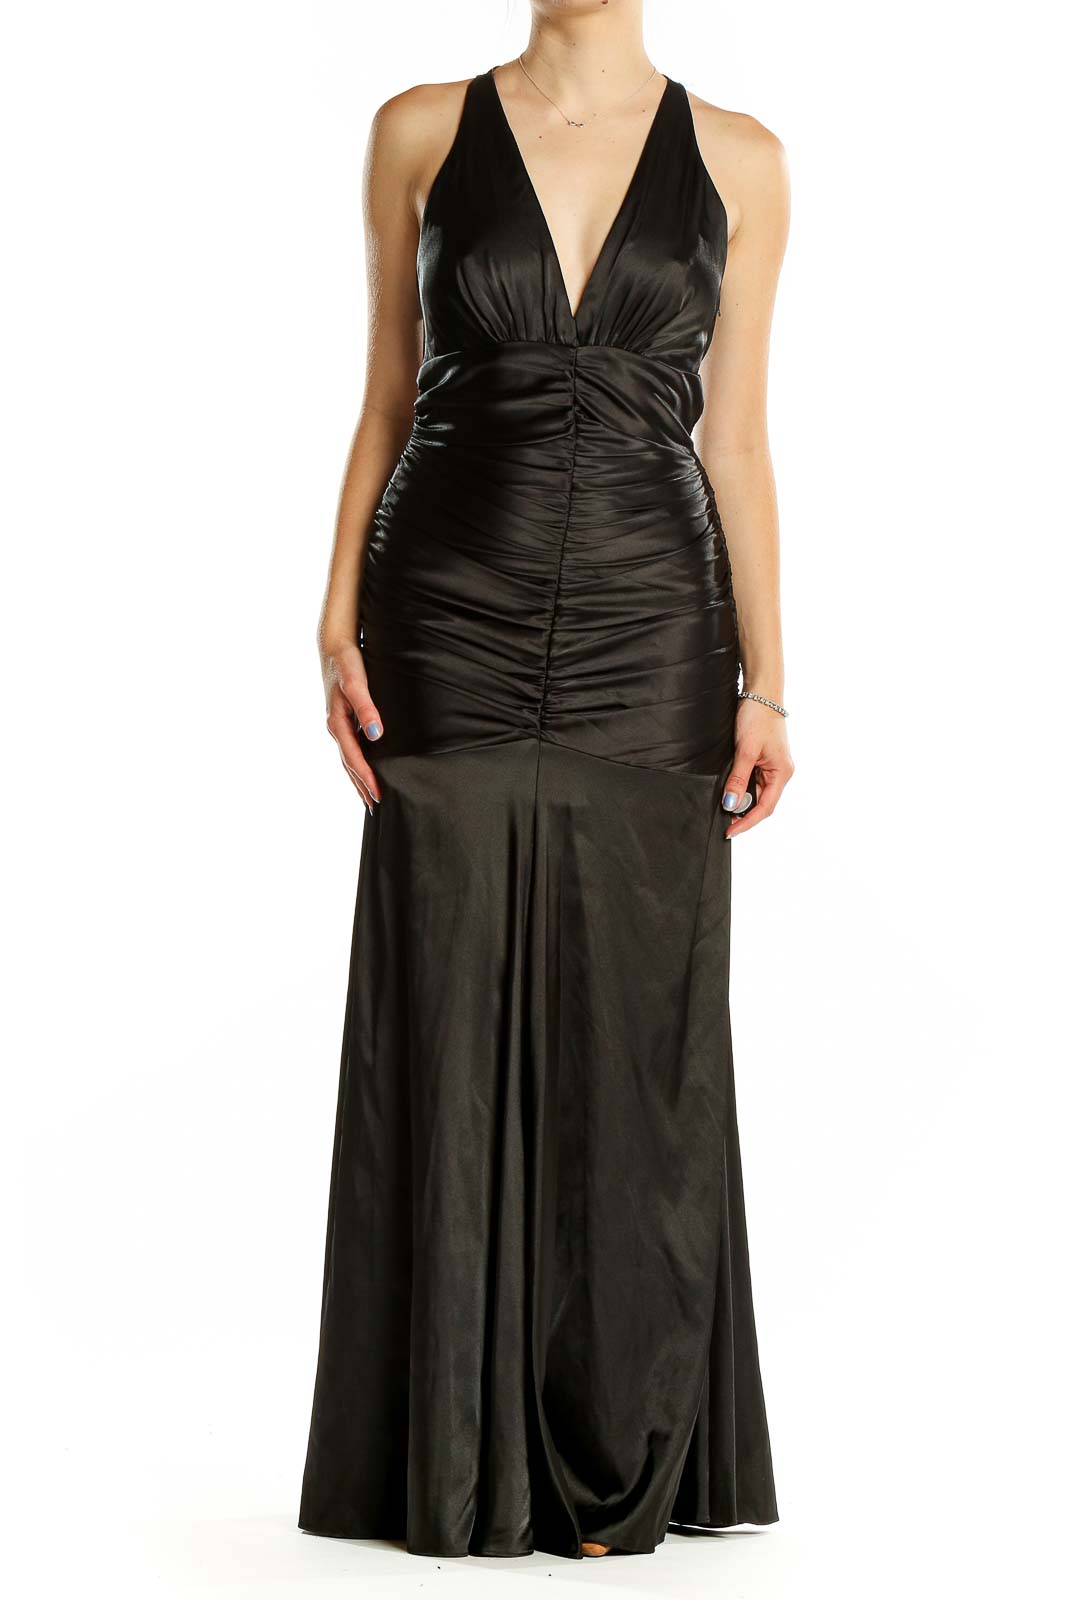  Black Column Vintage Dress Front